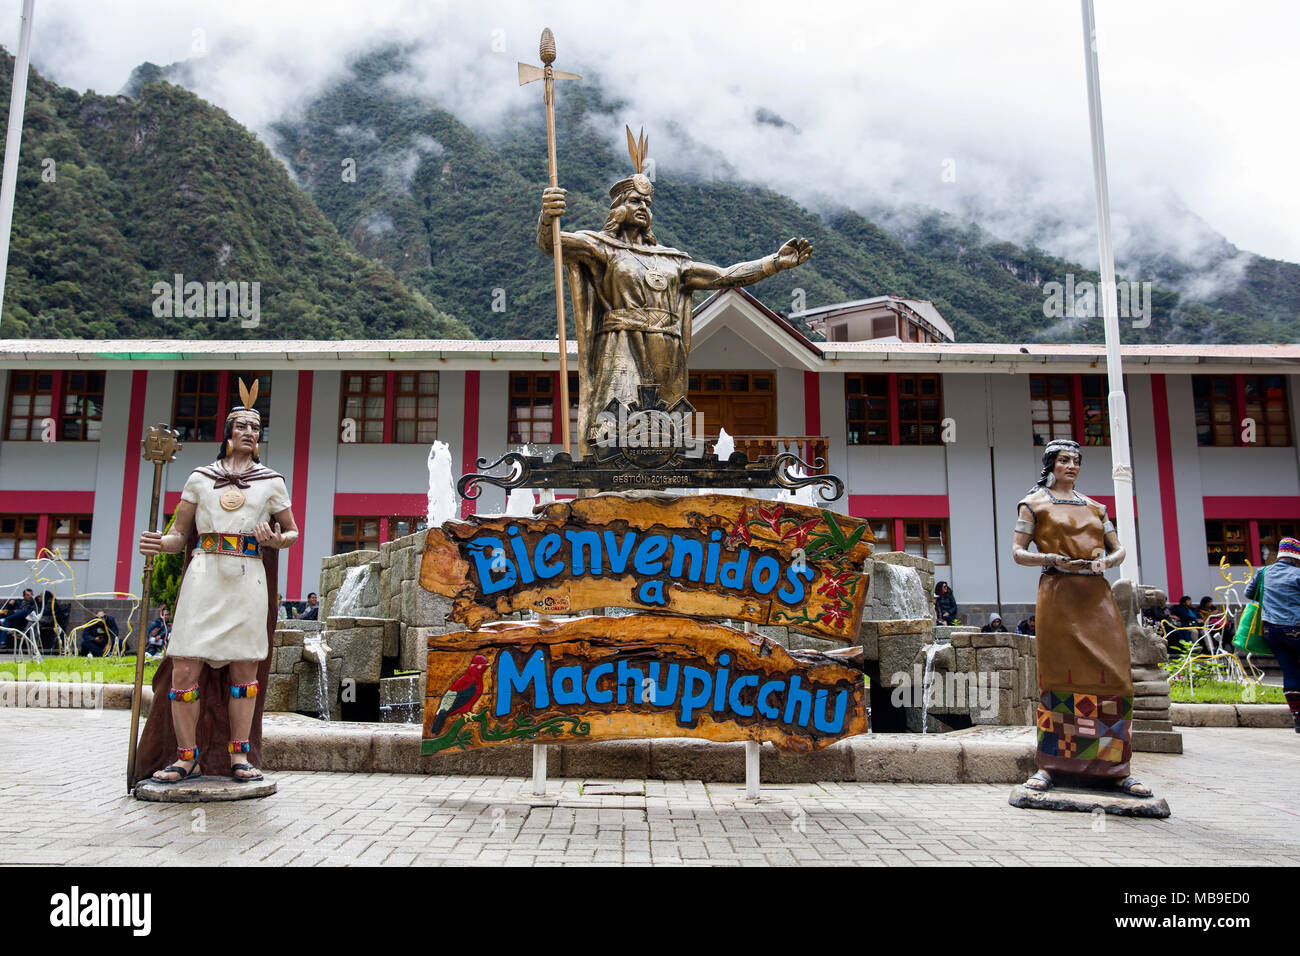 AGUAS CALIENTES, PÉROU - 3 janvier 2018 : Statue de Pachacuti à Aguas Calientes, le Pérou. Pachacuti fut le 9e Sapa Inca du Royaume de Cuzco. Banque D'Images